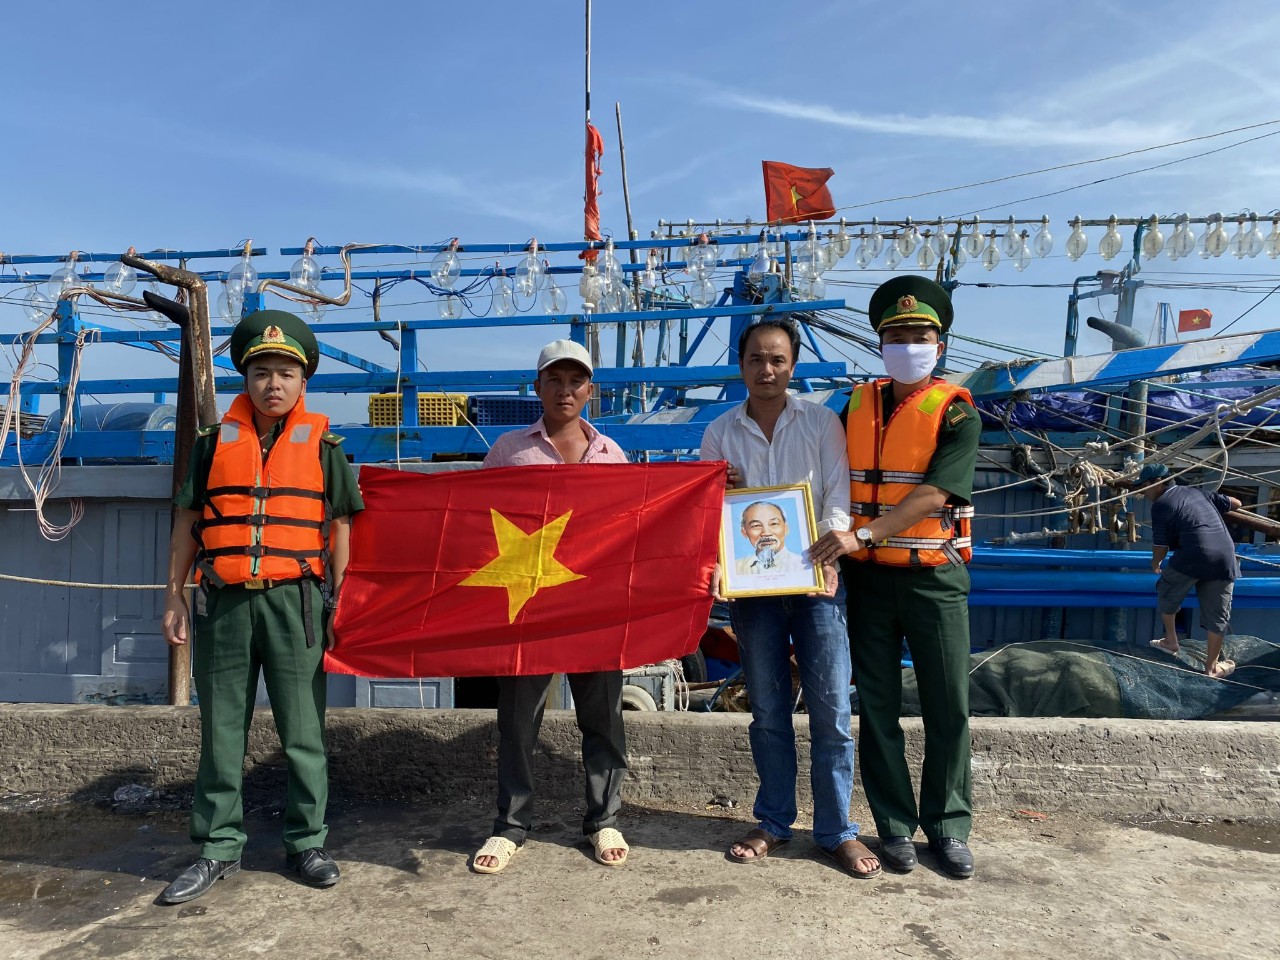 Cán bộ Đồn Biên phòng Bình Châu tuyên truyền chống khai thác IUU, tặng cờ Tổ quốc, ảnh Bác động viên ngư dân bám biển.